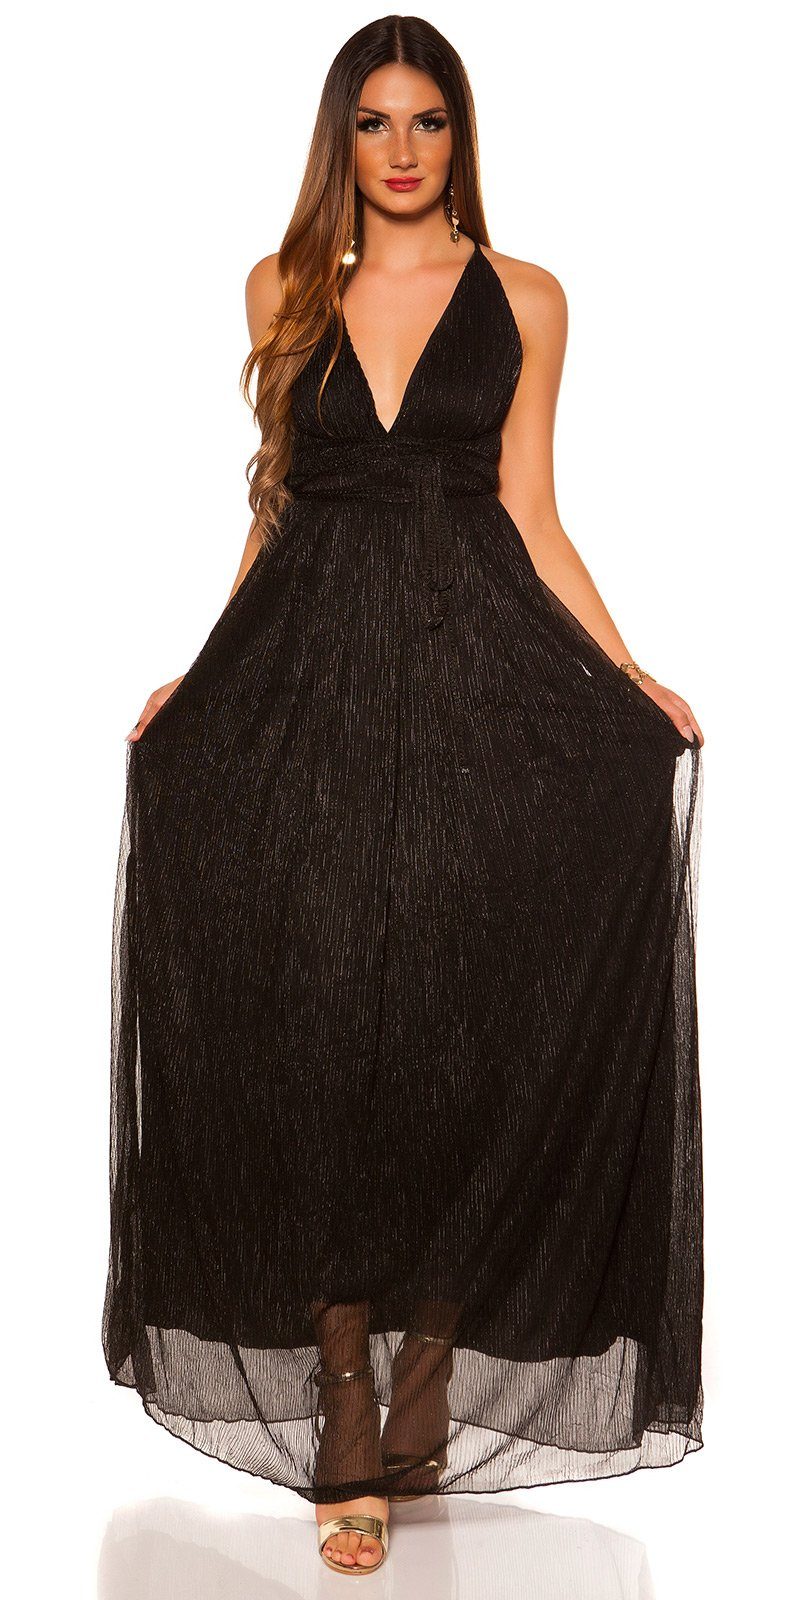 Koucla Abendkleid Material, mit Rücken schwarz glänzendes, Maxikleid Plissee-Stil offenem glitzerndes Plissee im